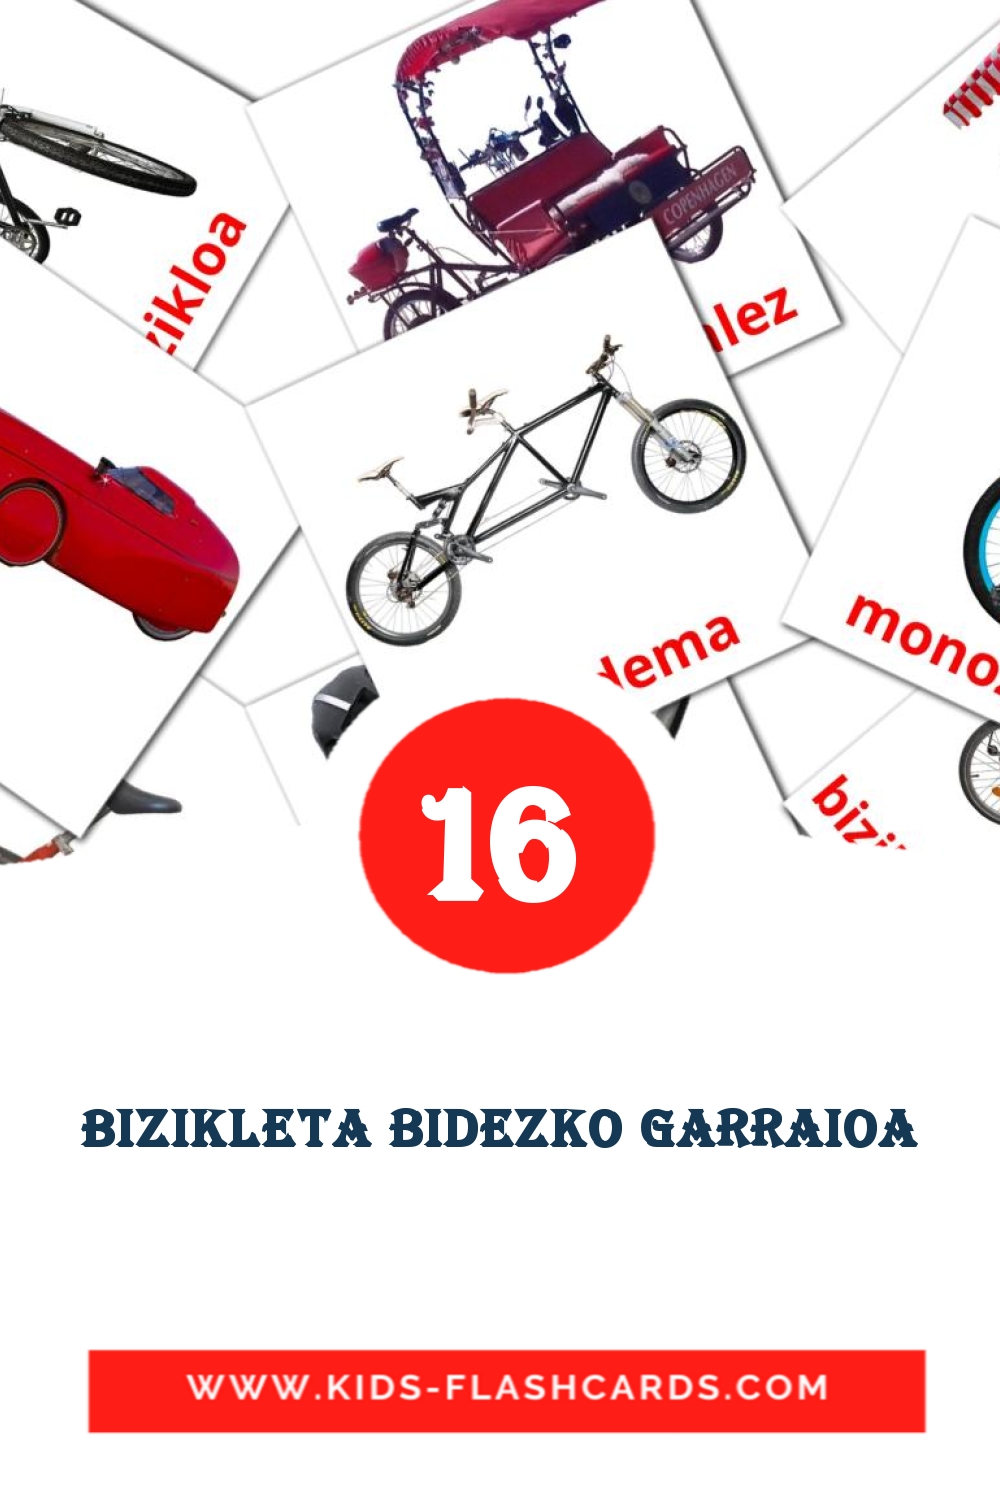 16 Bizikleta bidezko garraioa Picture Cards for Kindergarden in basque